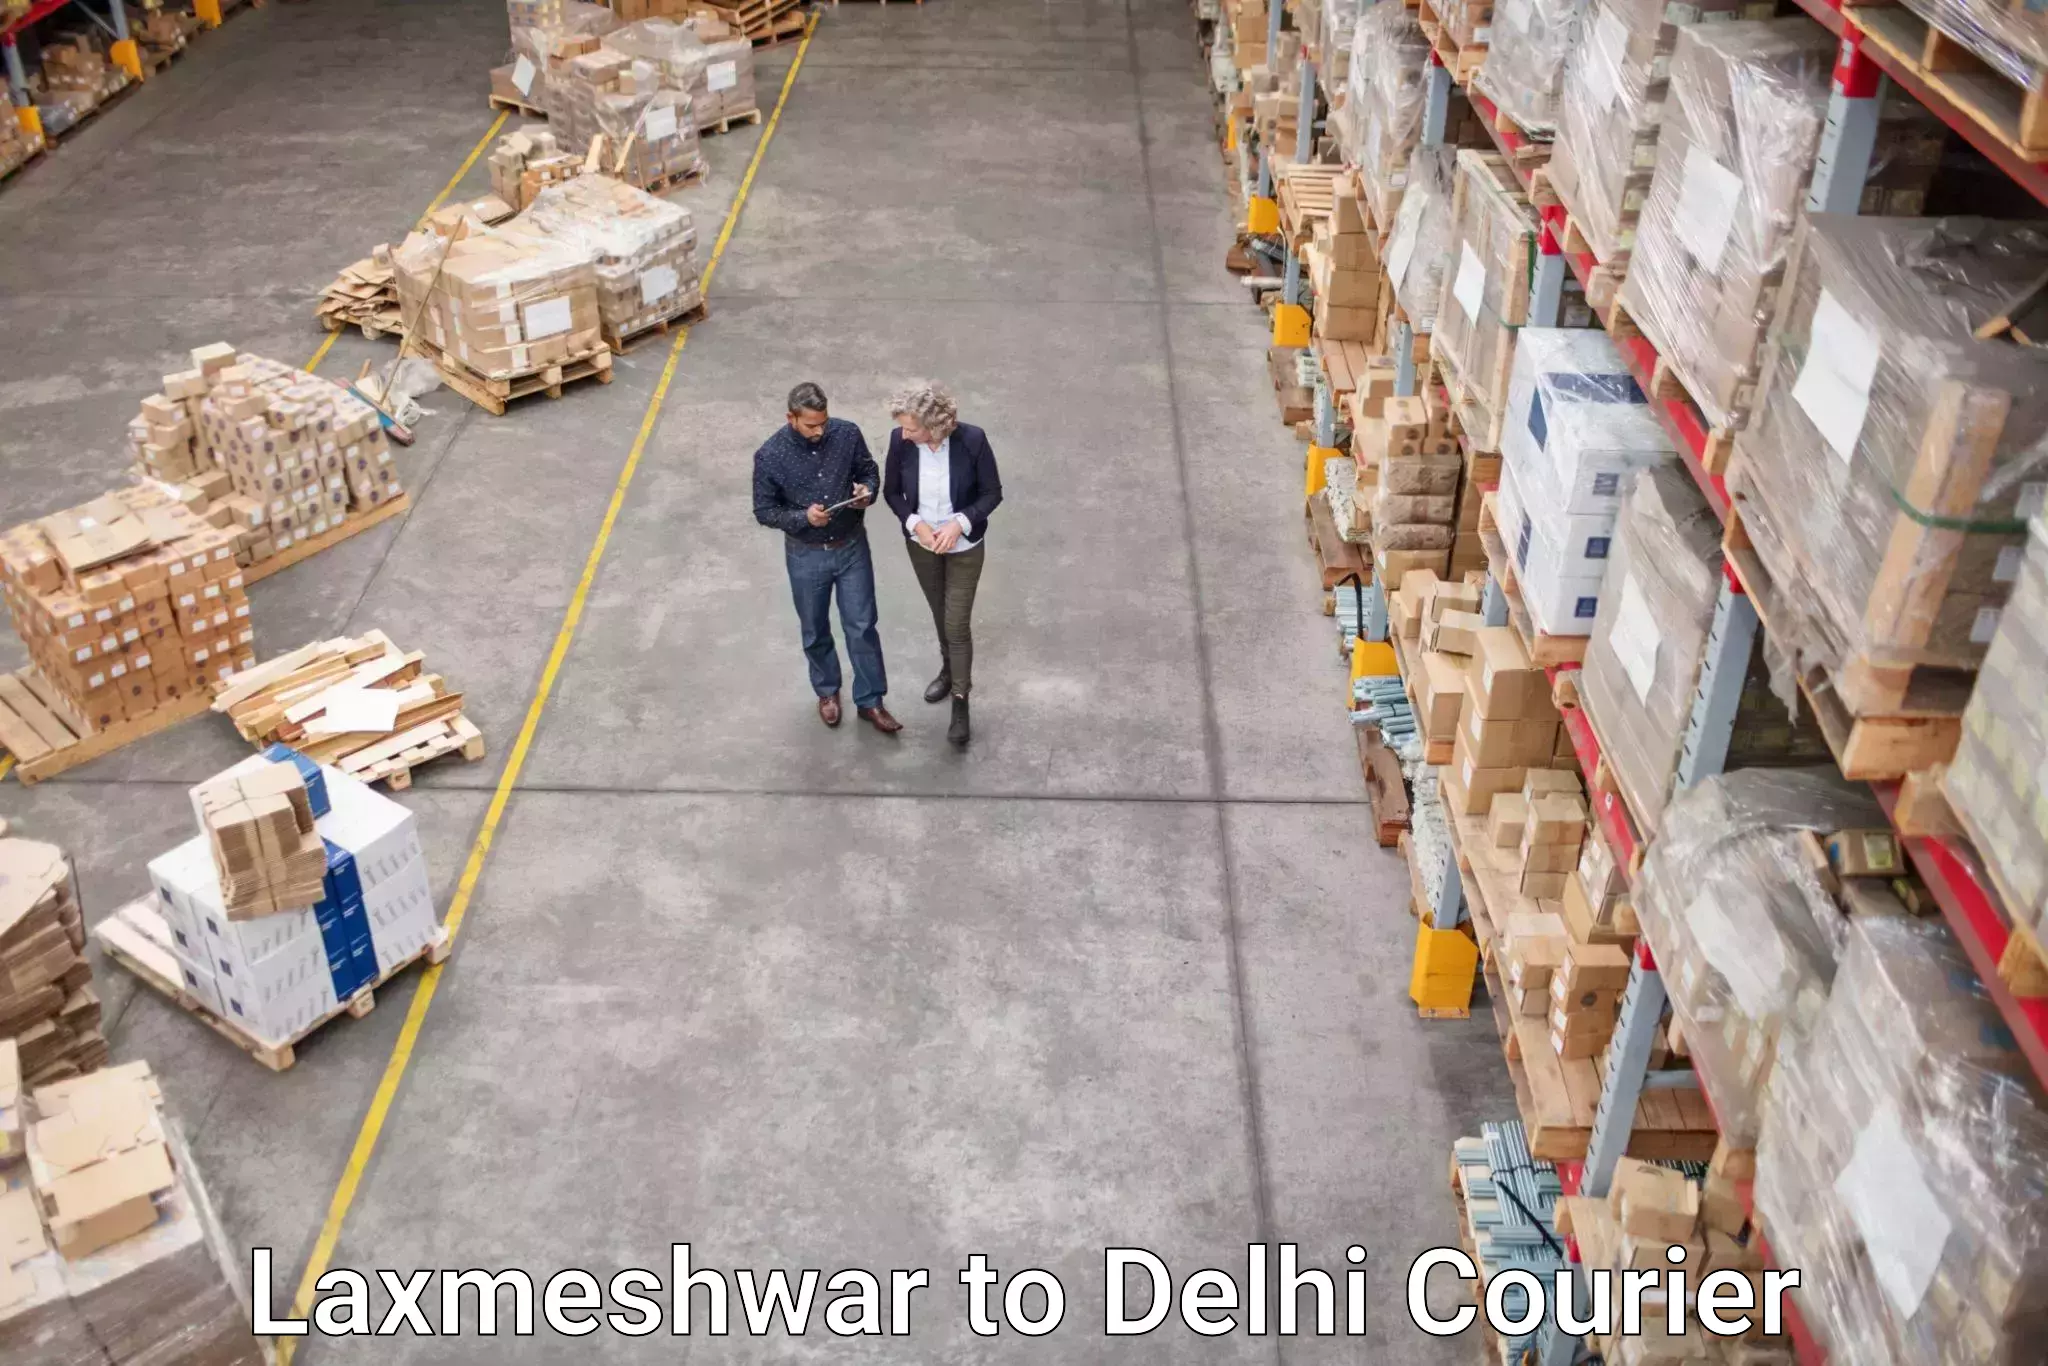 Digital courier platforms in Laxmeshwar to NIT Delhi